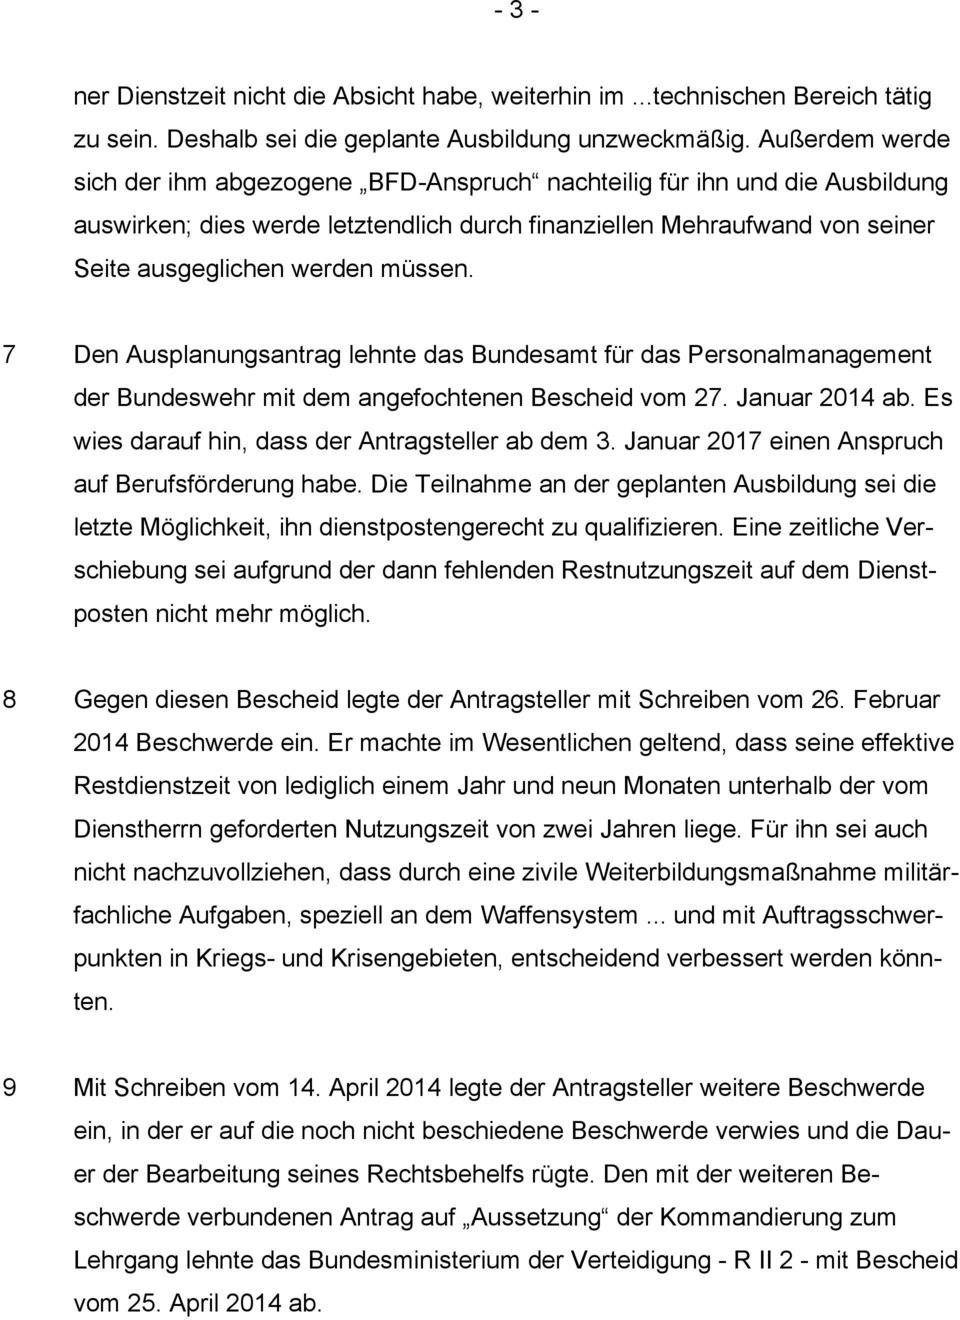 7 Den Ausplanungsantrag lehnte das Bundesamt für das Personalmanagement der Bundeswehr mit dem angefochtenen Bescheid vom 27. Januar 2014 ab. Es wies darauf hin, dass der Antragsteller ab dem 3.